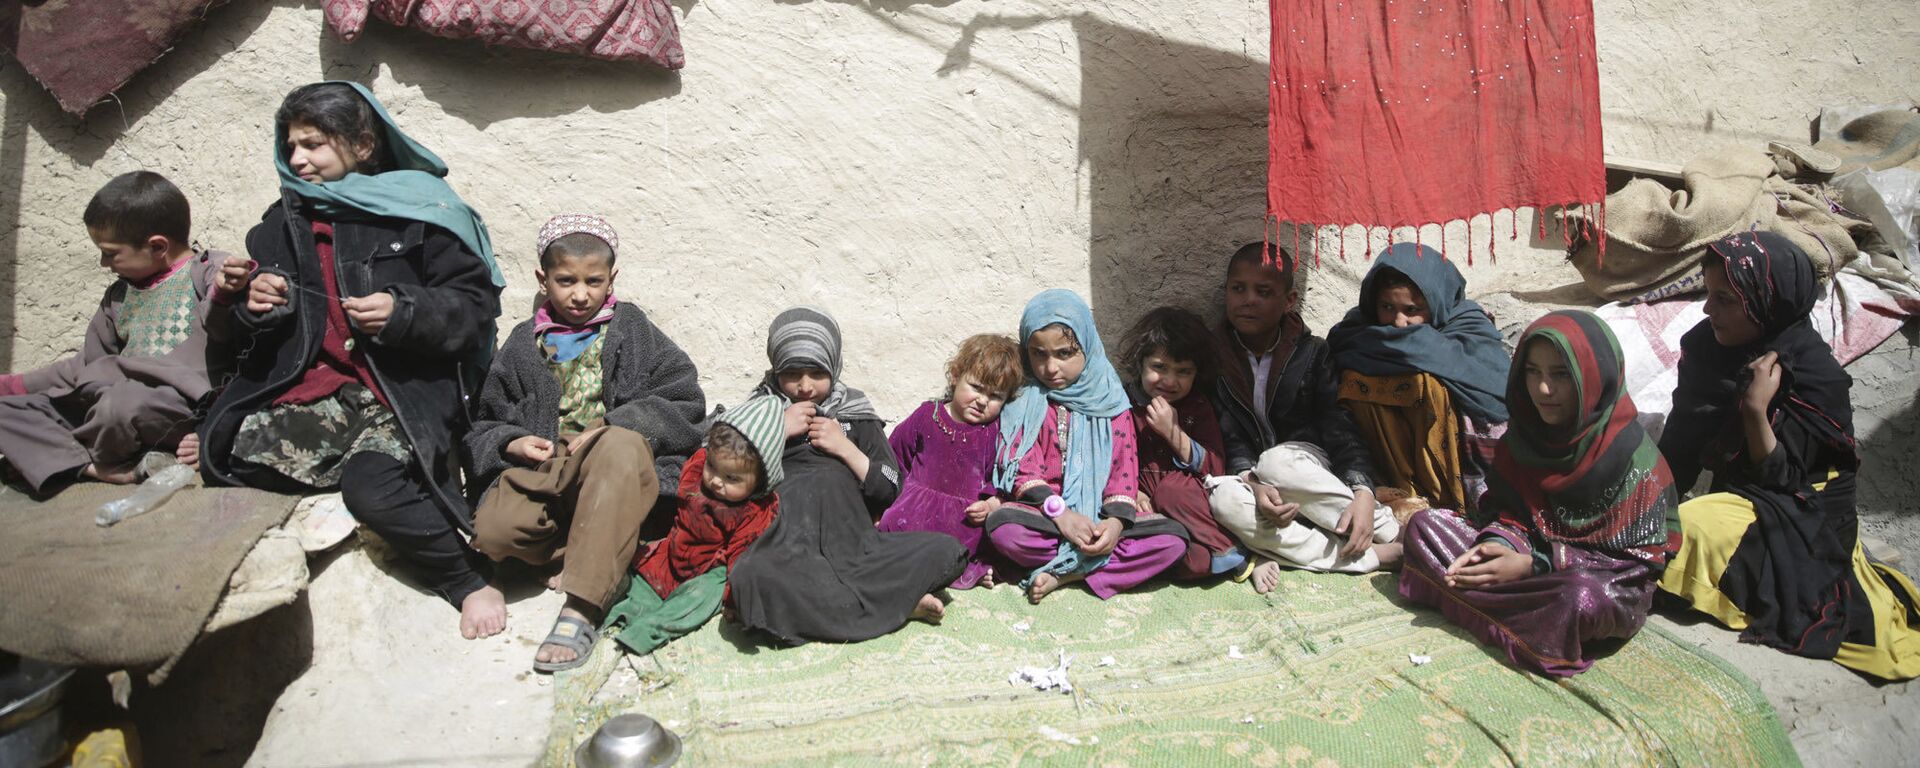 Дети сидят на солнце в своем доме в Кабуле, Афганистан, архивное фото - Sputnik Таджикистан, 1920, 07.03.2023